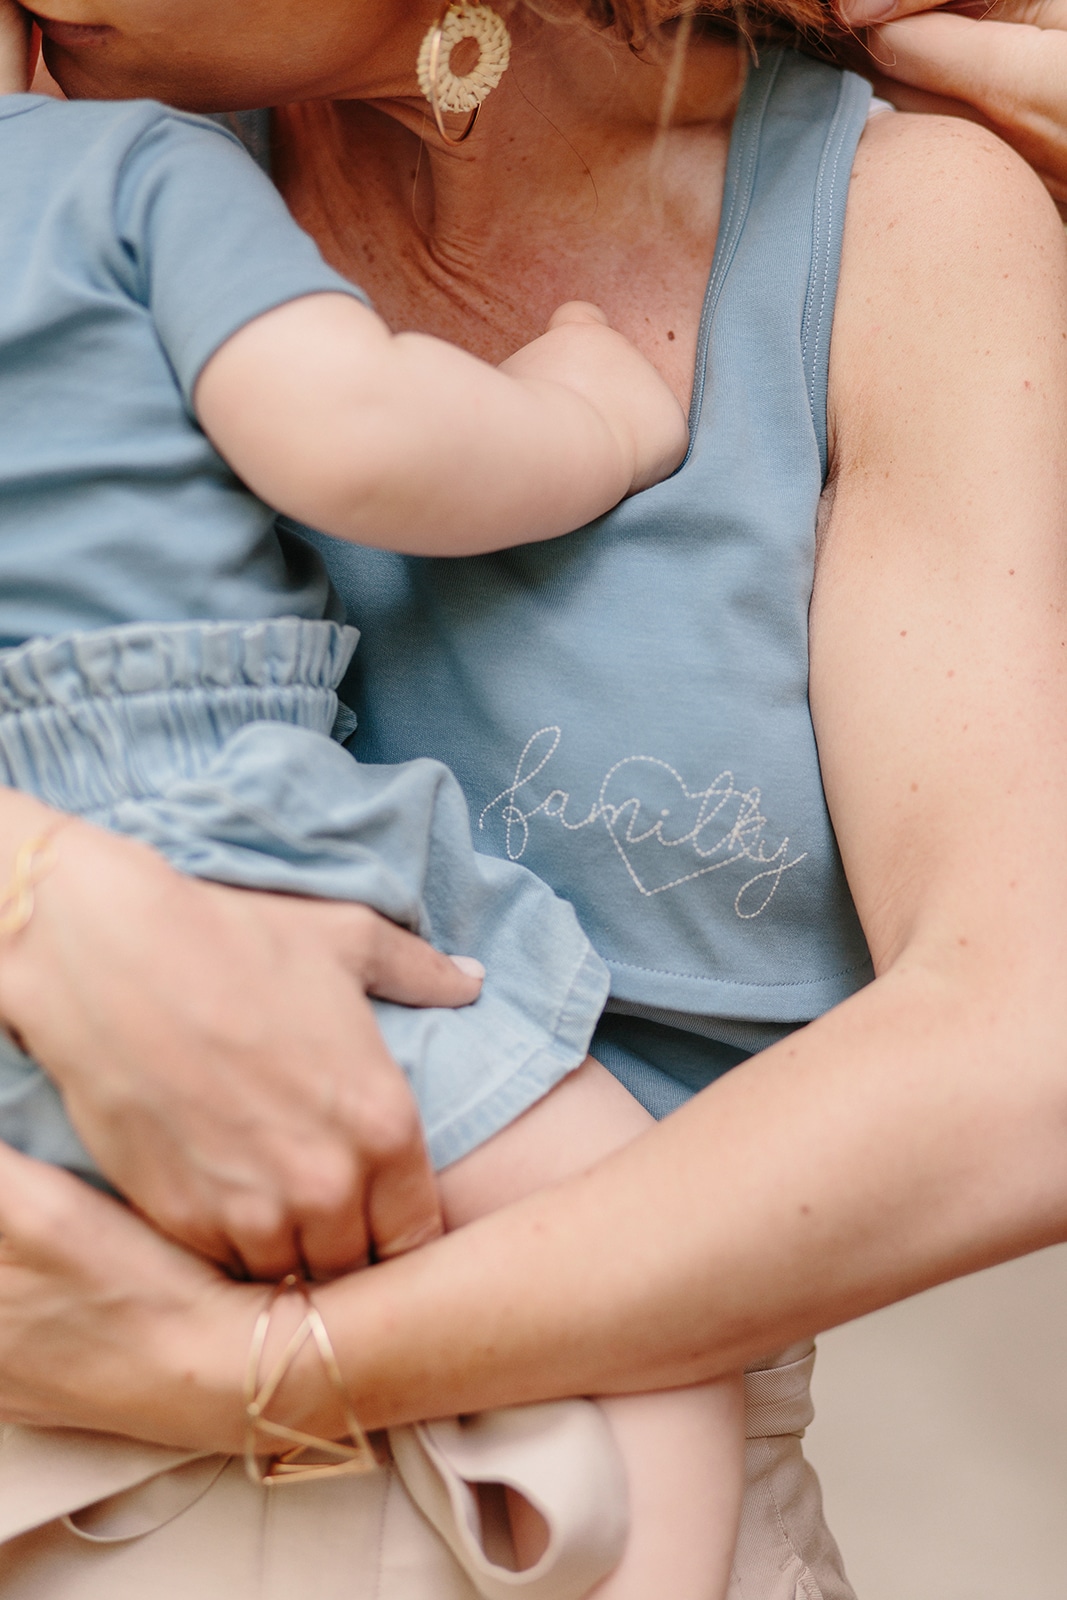 Top d allaitement et body coordonne – Detail broderie – you and milk – Coloris bleu – Familky – Printemps – ete – 2019 – Lancement de marque